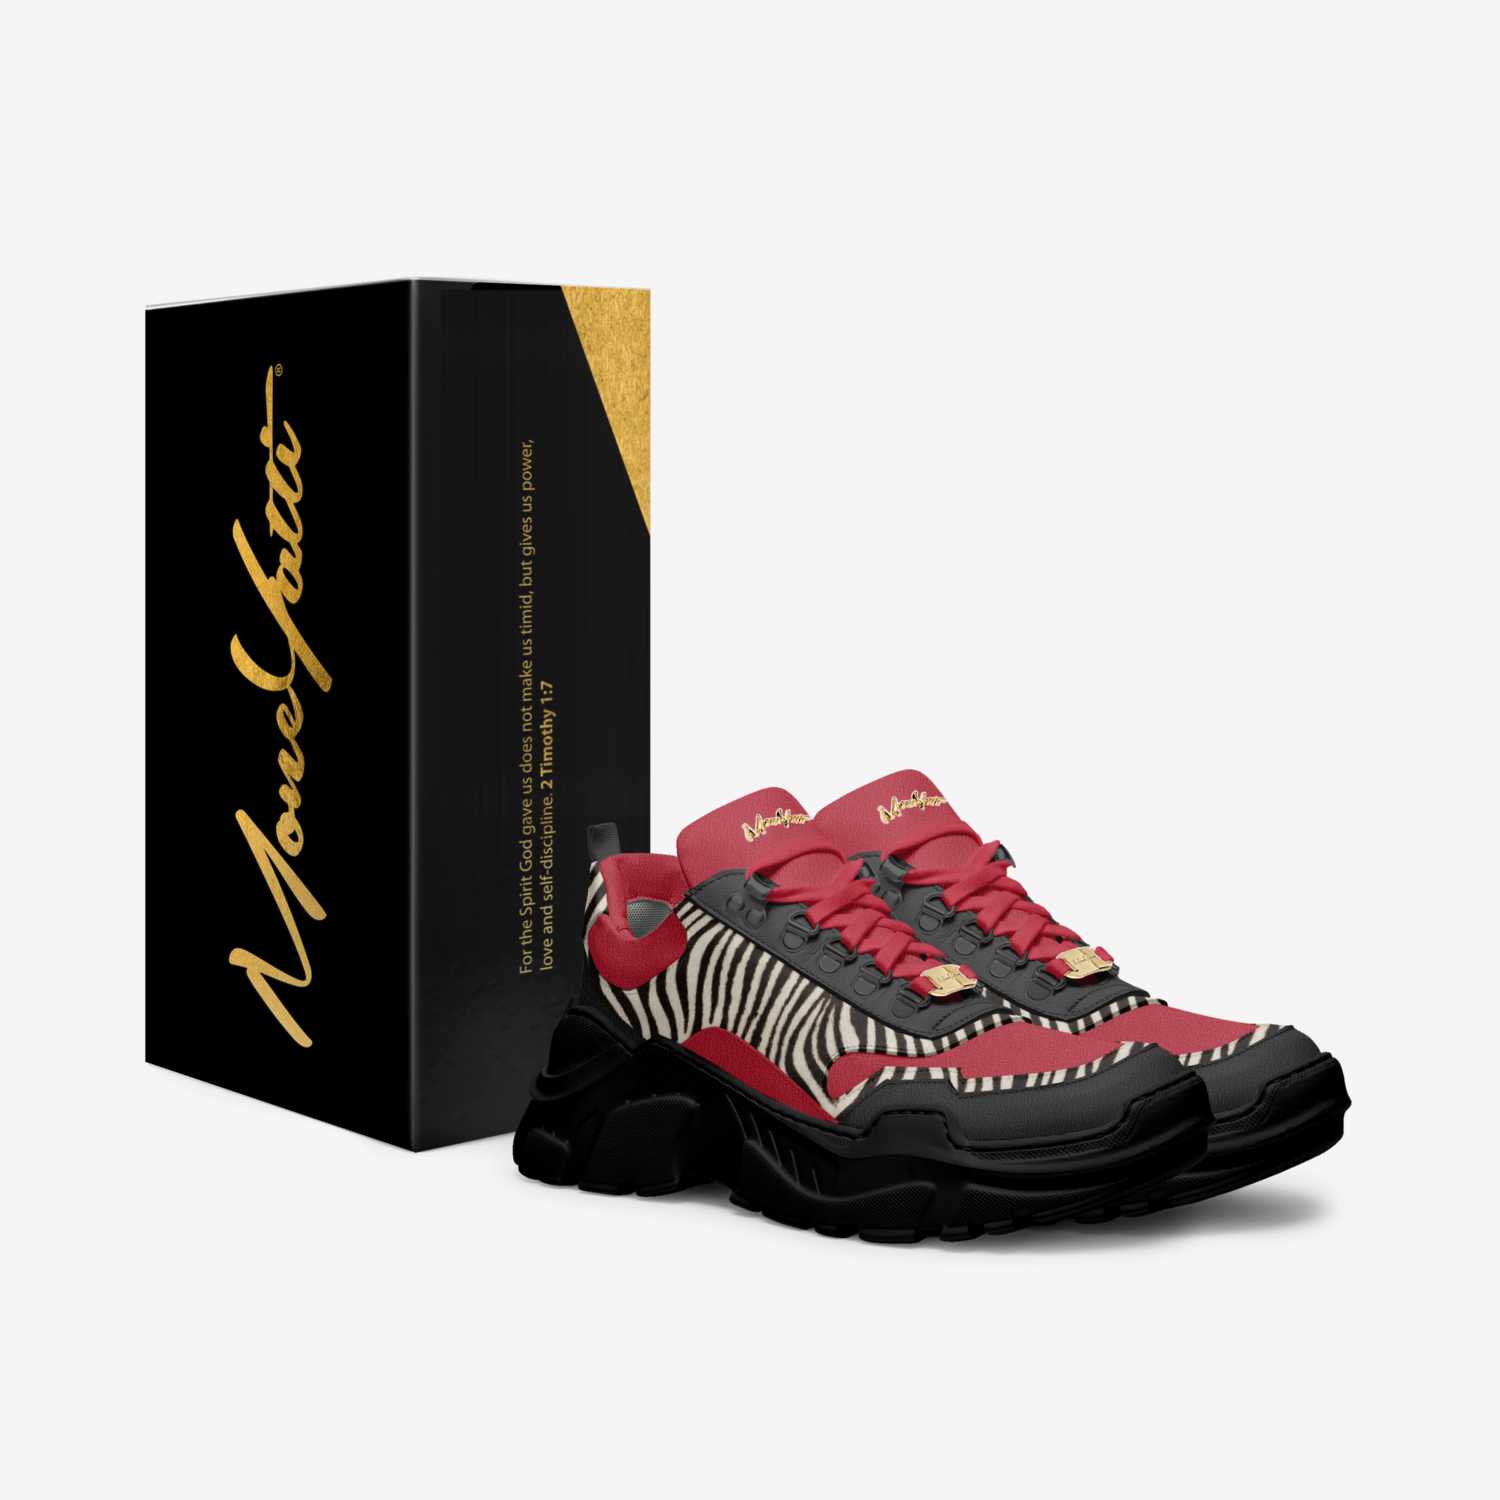 Moneyatti Murks10 custom made in Italy shoes by Moneyatti Brand | Box view